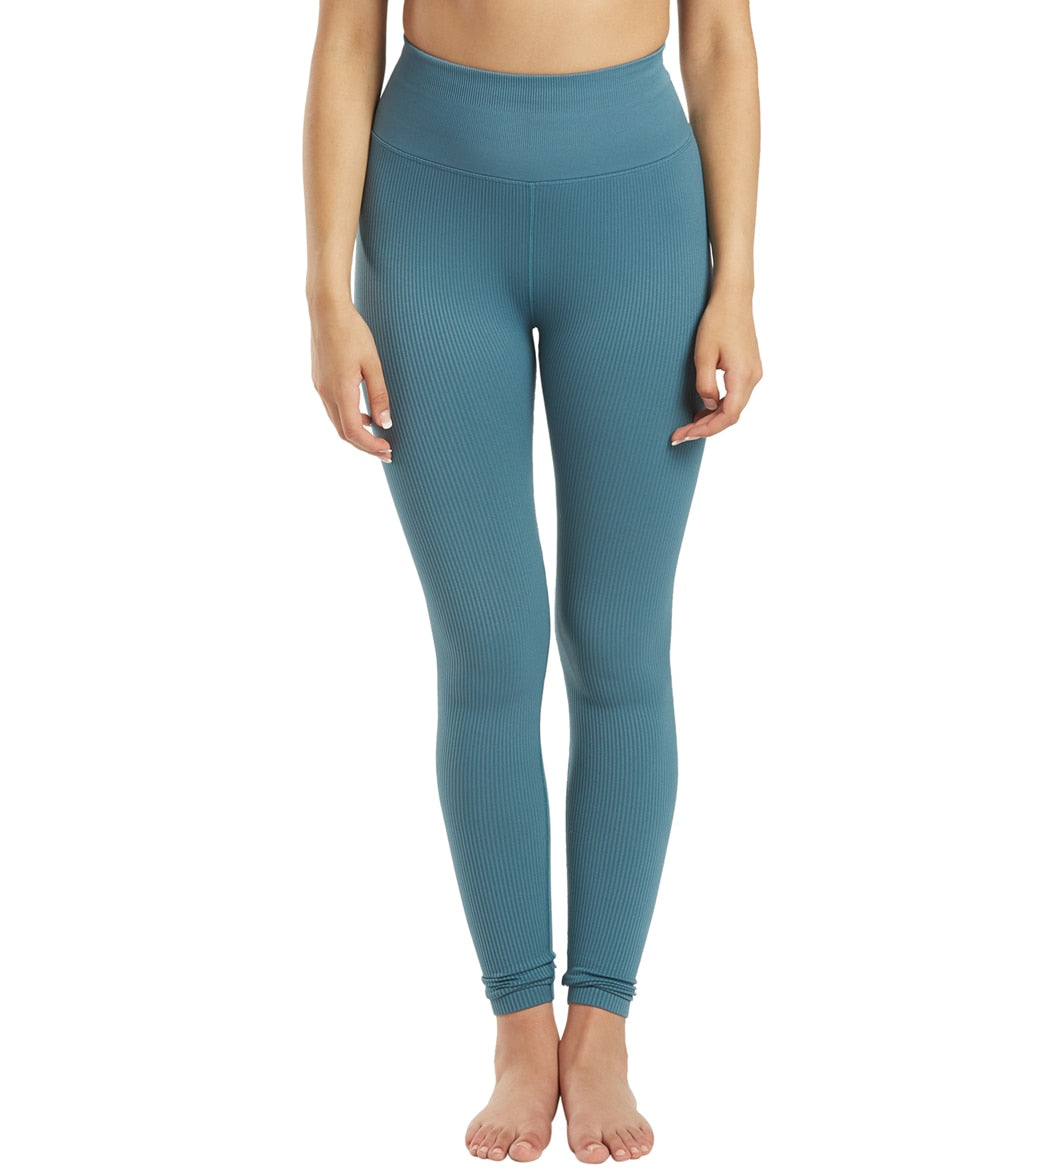 Turquoise Yoga Leggings for Women Soft Soft Capri Yoga Leggings